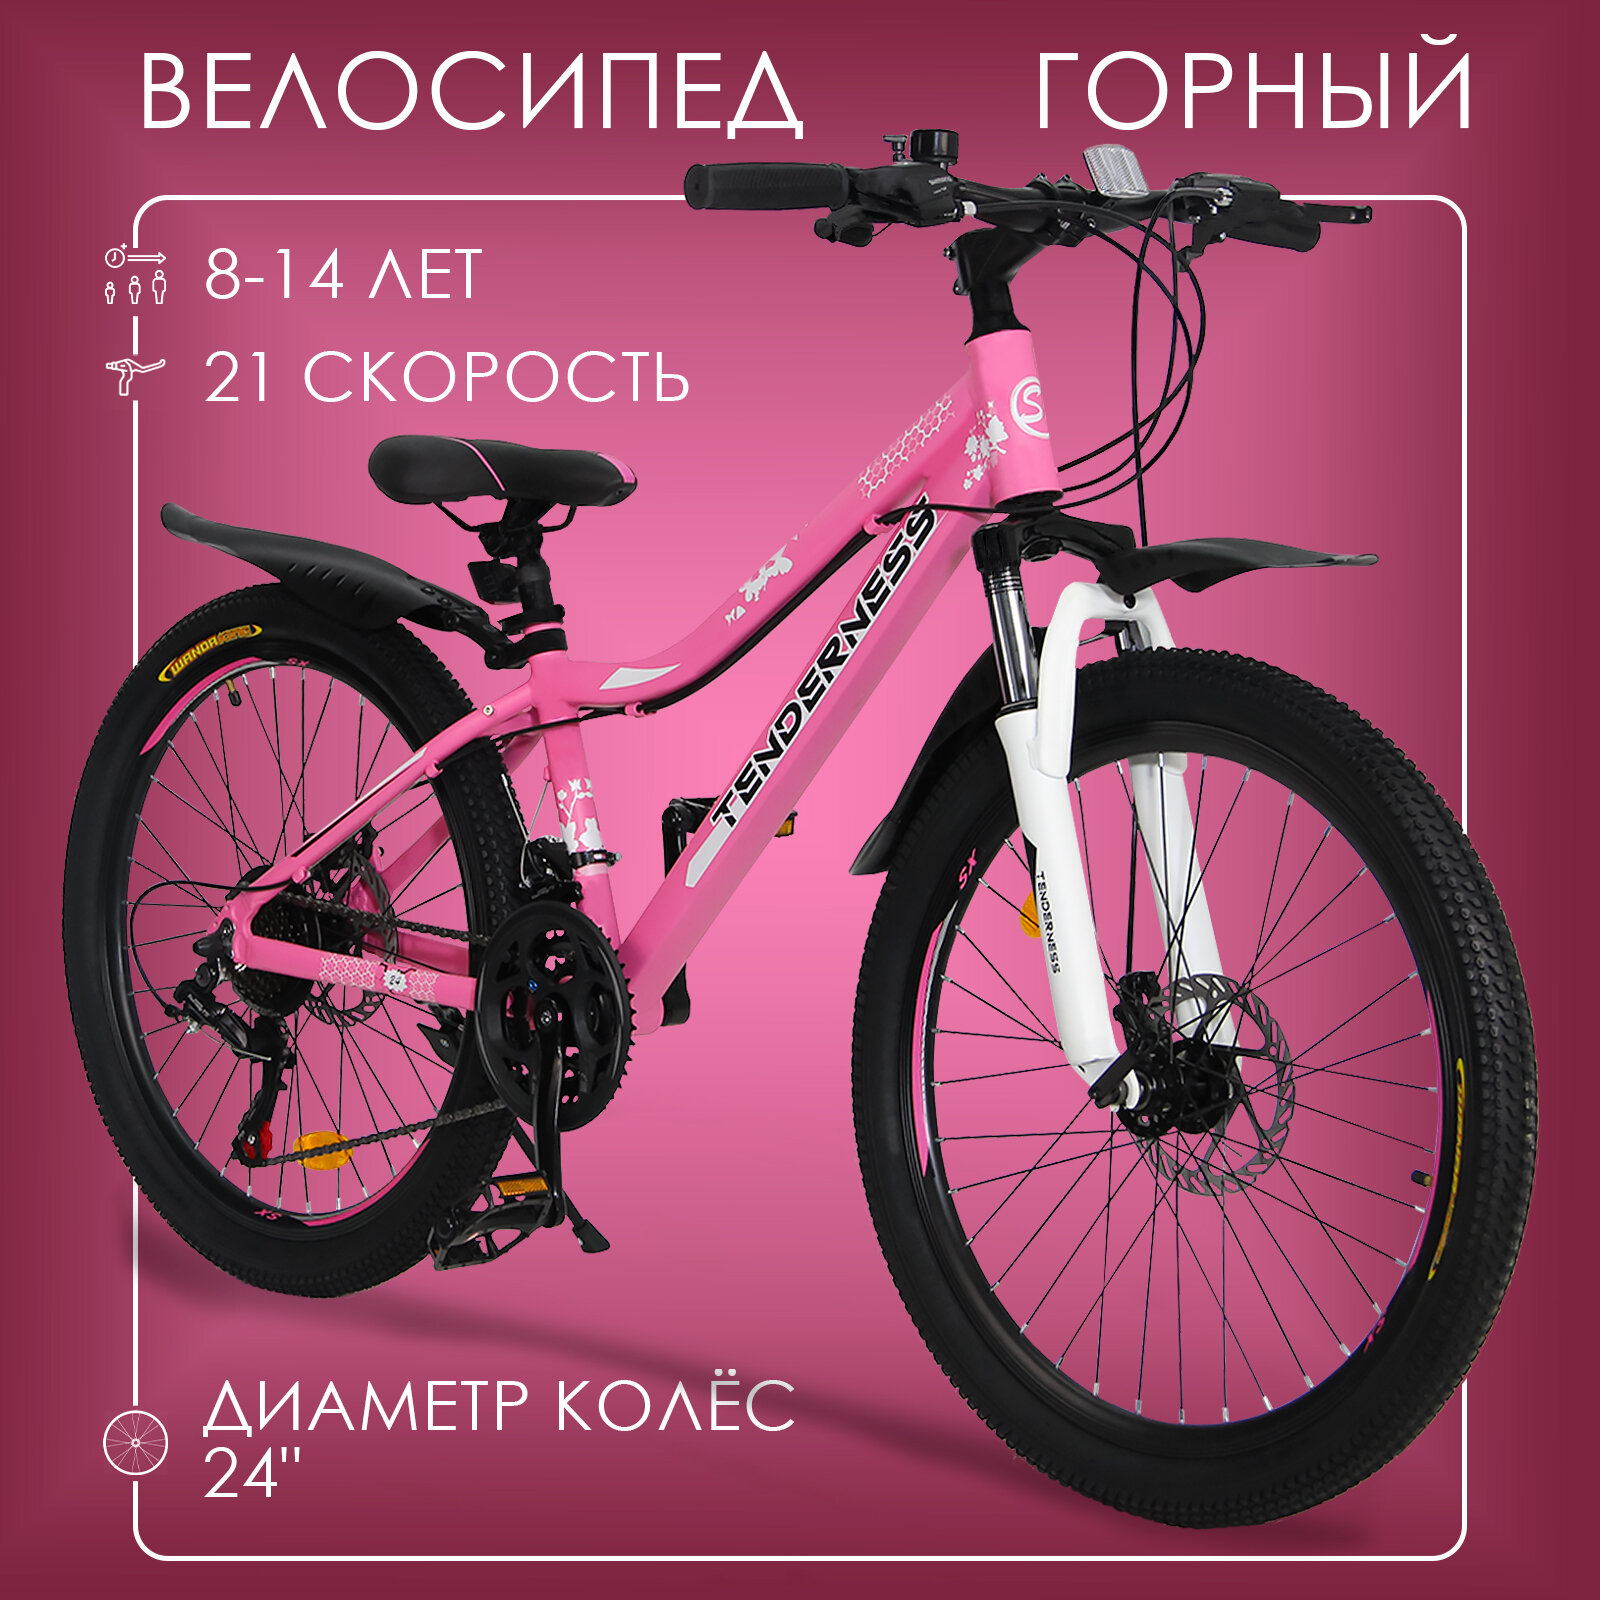 Горный велосипед детский скоростной Tenderness 24" розовый, 8-14 лет, 21 скорость (Shimano tourney)